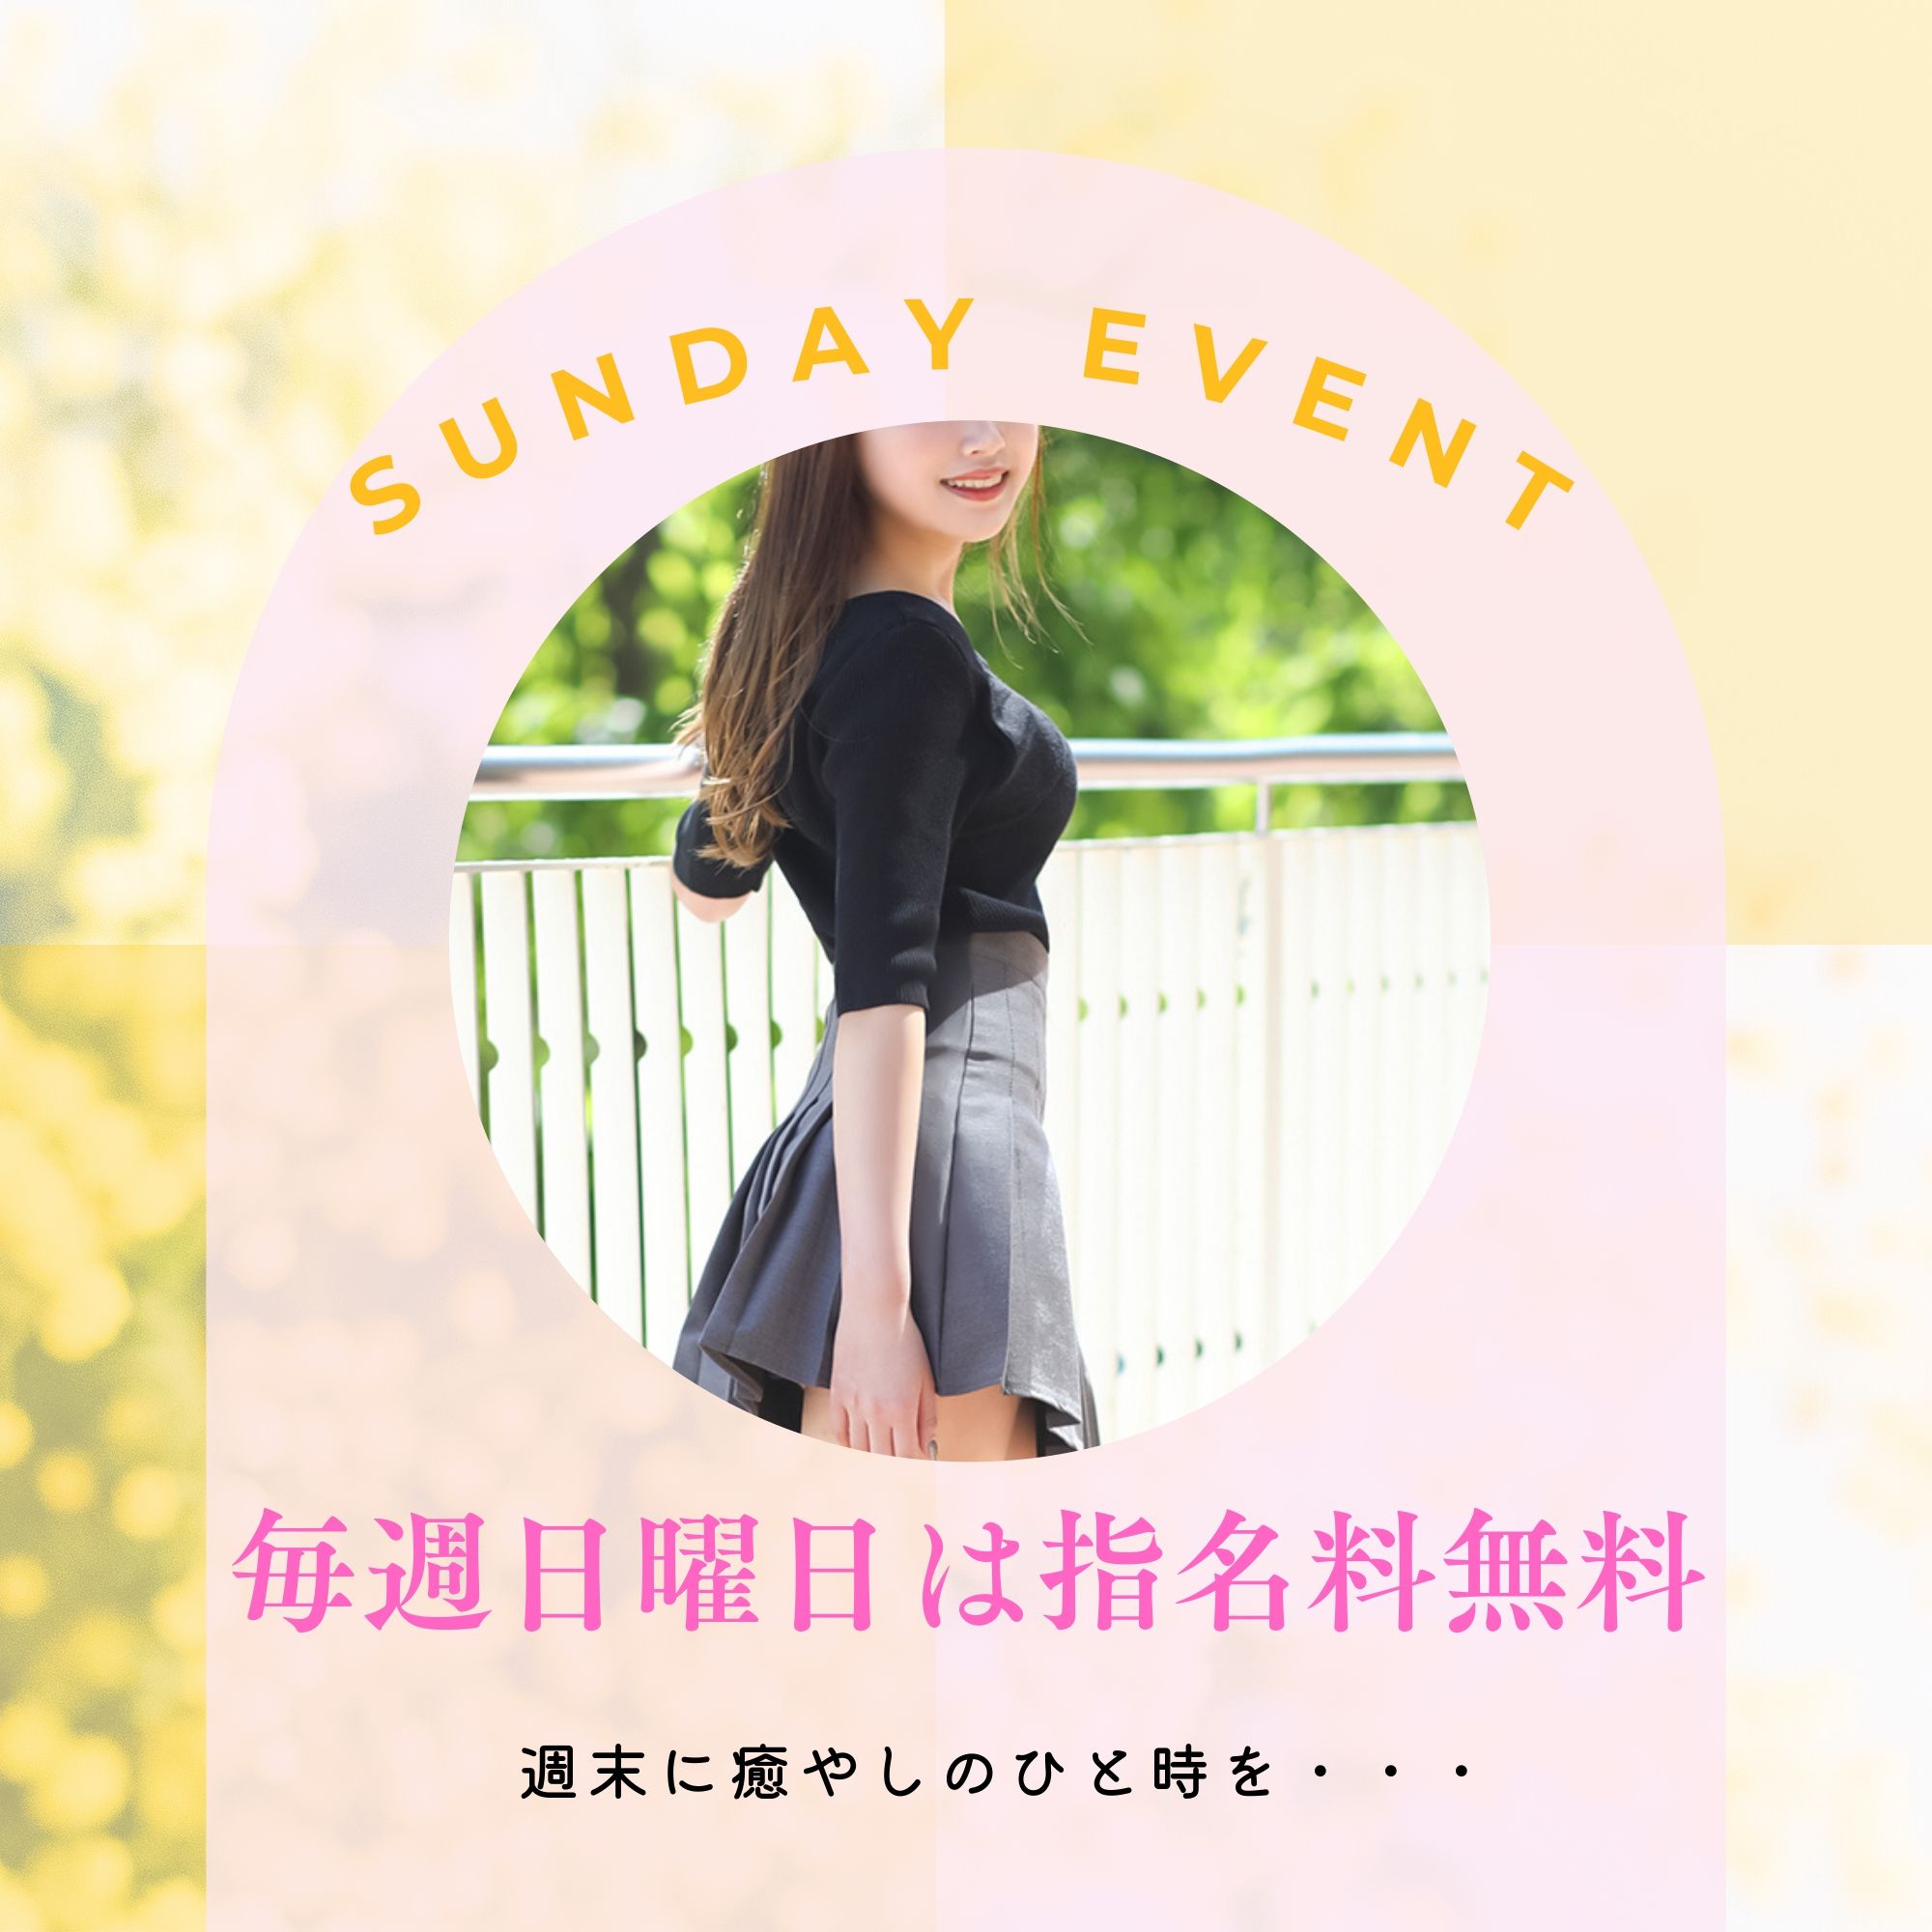 【日曜日だけの特別価格】SUNDAY EVENT